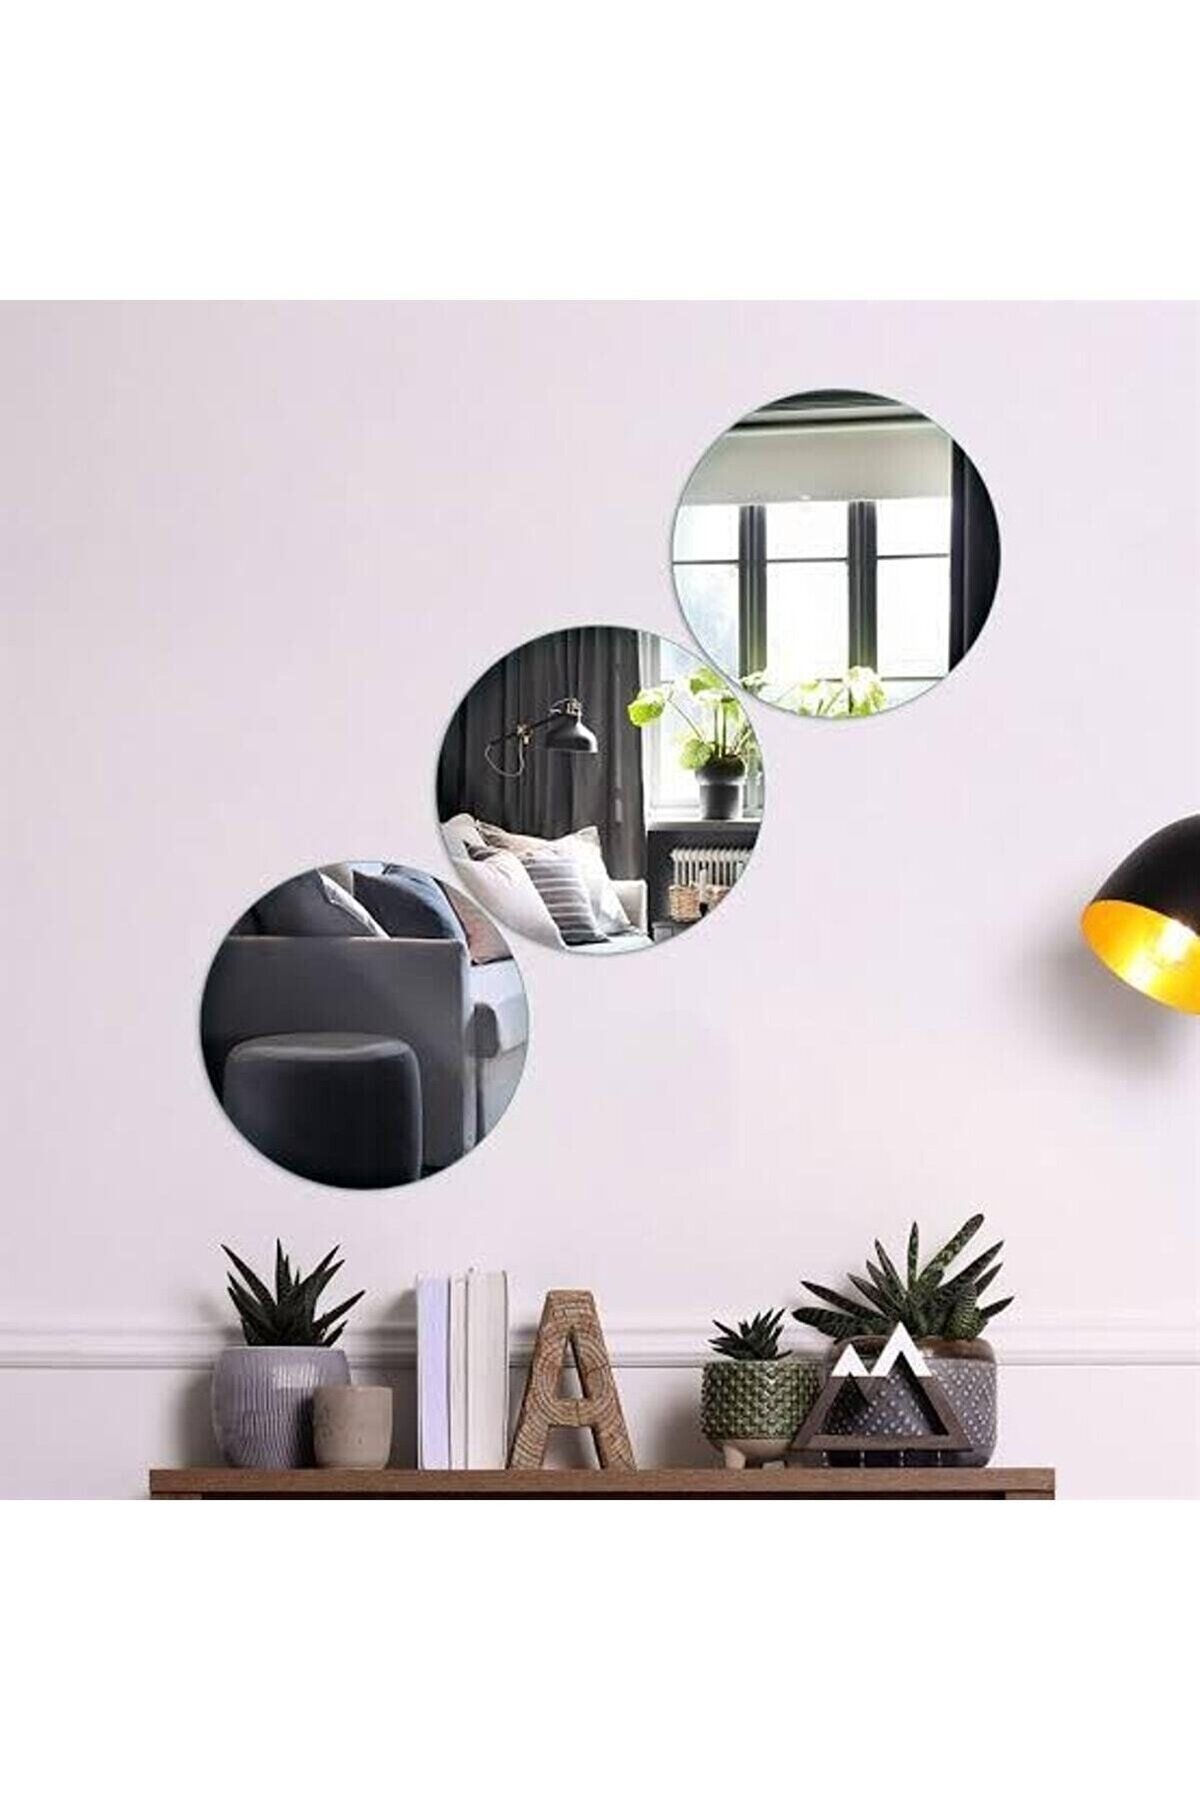 Demoplex Reklam Pleksi Market Dekoratif Yuvarlak Gümüş Ayna Pleksi Duvar Süsü 1 Adet ( Yapışkanlı )